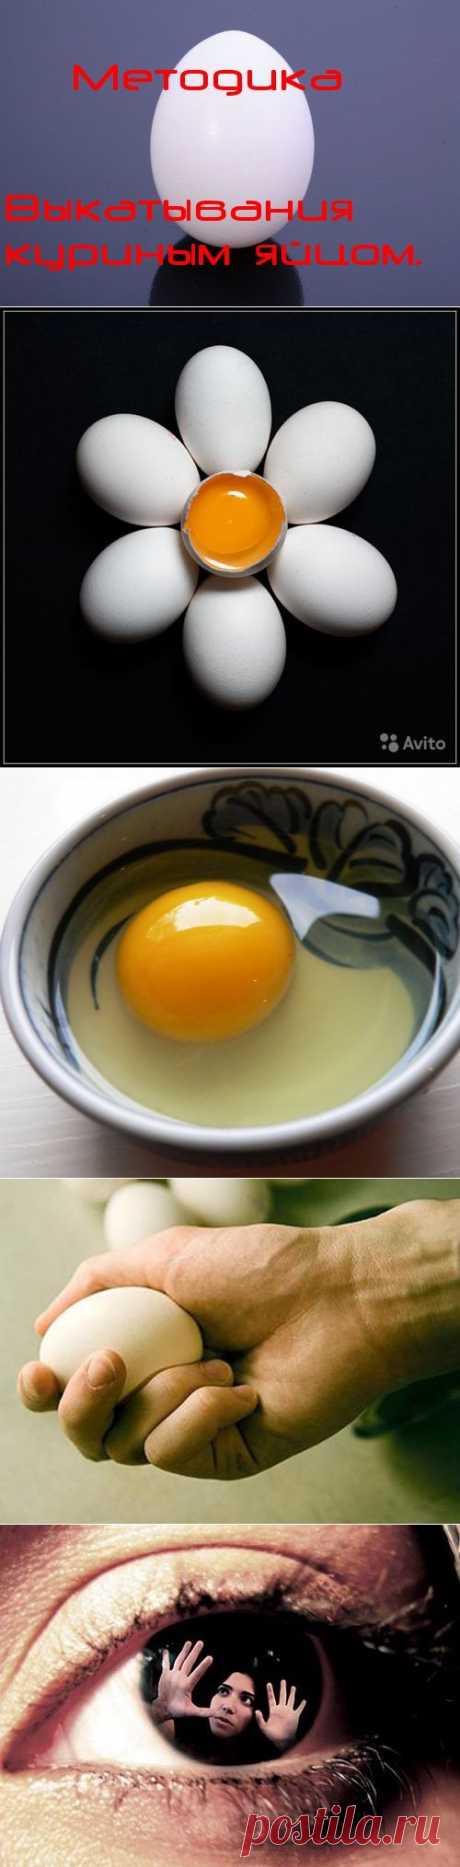 Обряды выкатывания яйцом...